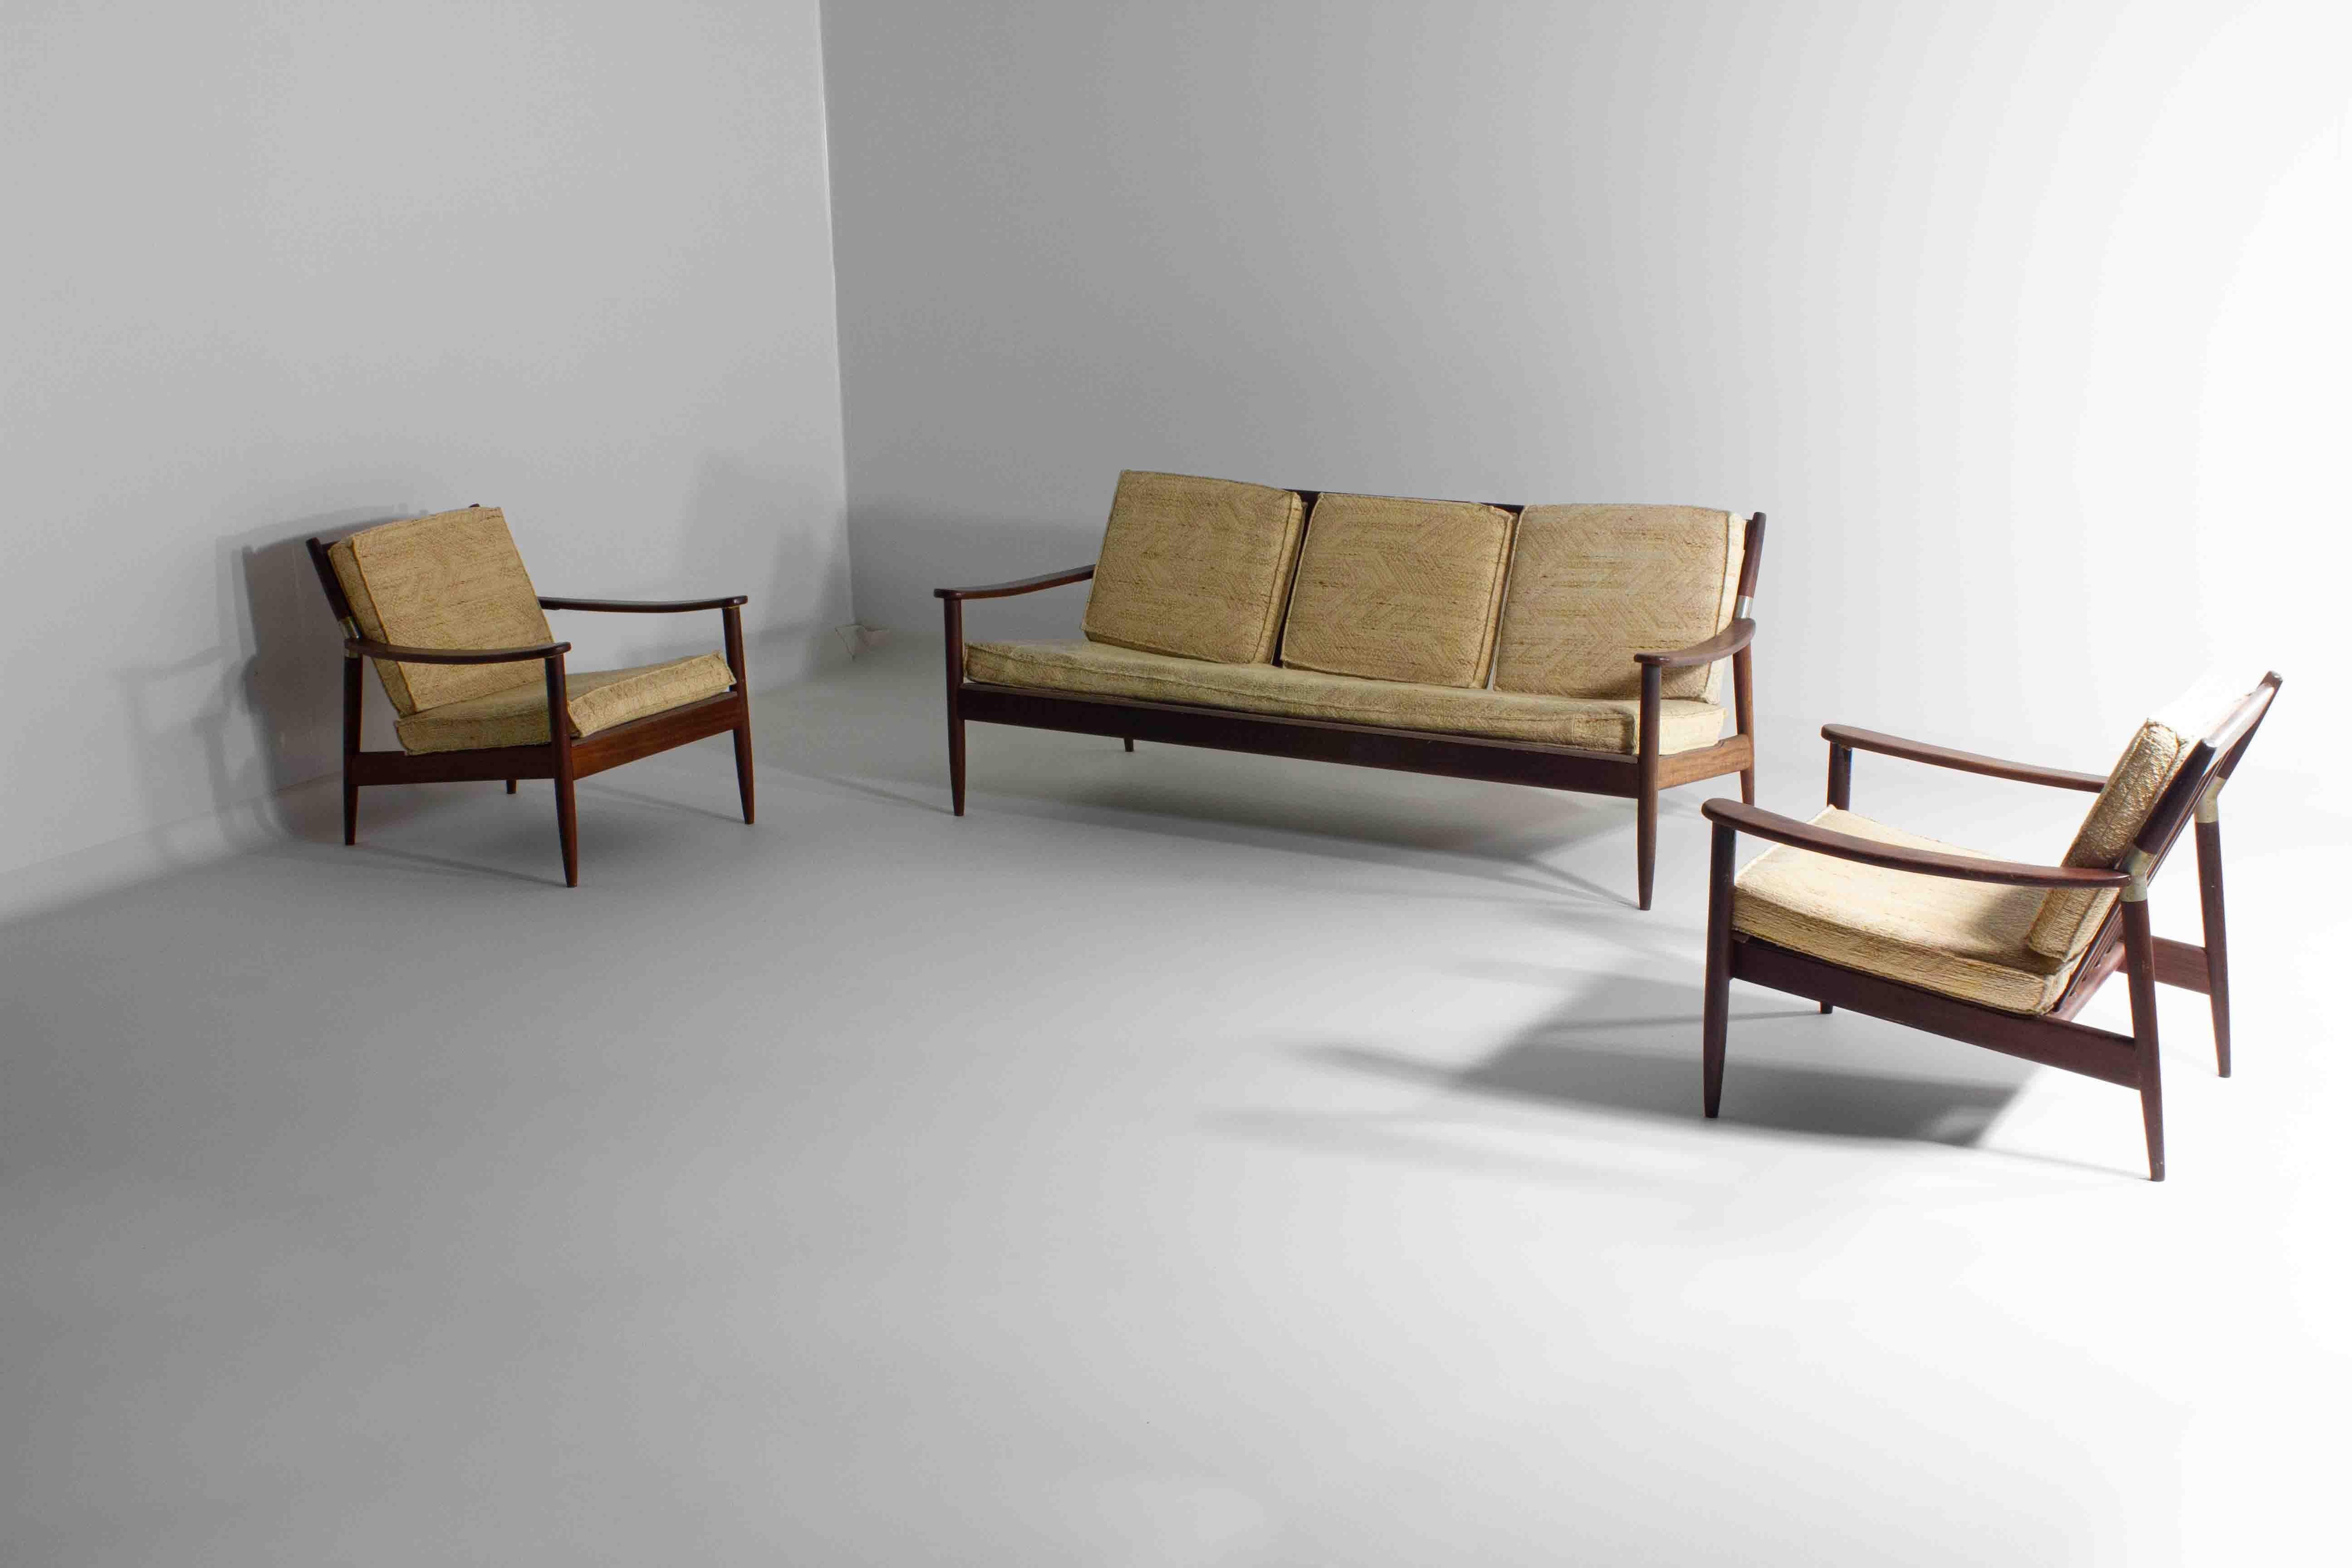 Cet ensemble de chaises longues scandinaves du milieu du siècle est un parangon des principes de conception qui ont fait de ce style une influence durable dans la décoration d'intérieur. Il se compose d'un cadre en teck profilé et épuré qui présente